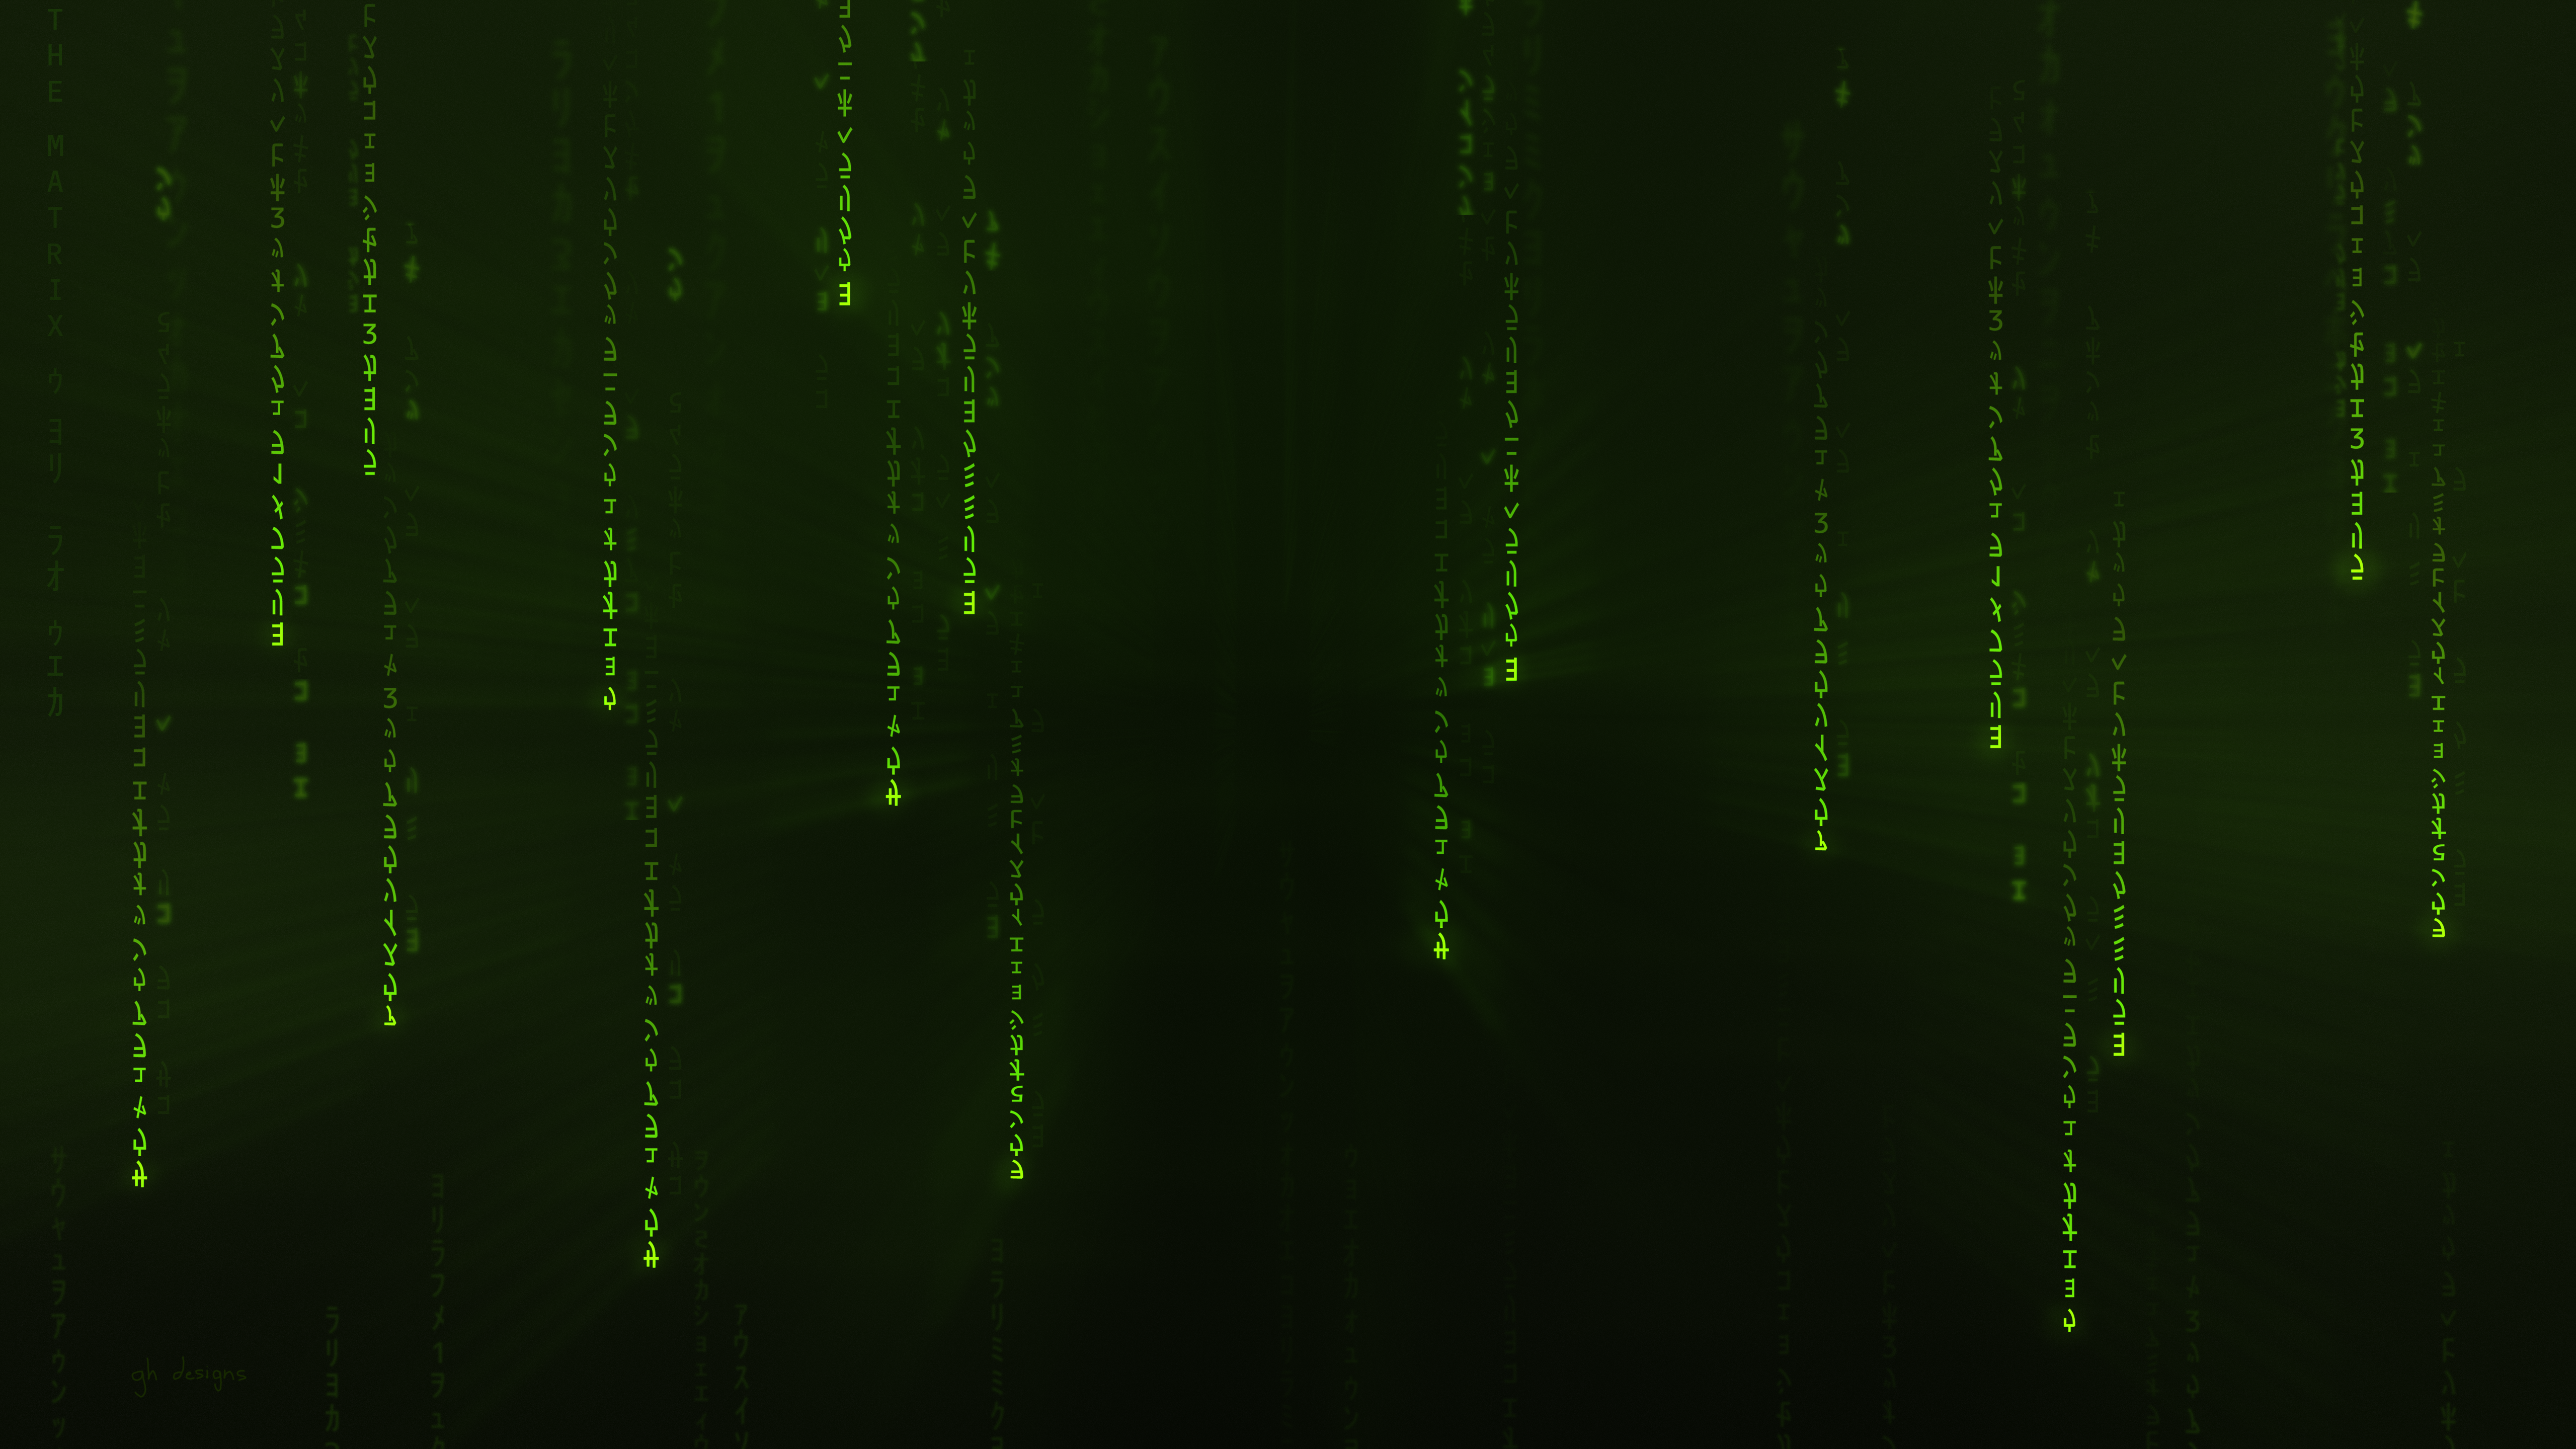 General 5120x2880 green minimalism Starkiteckt Matrix code The Matrix digital art